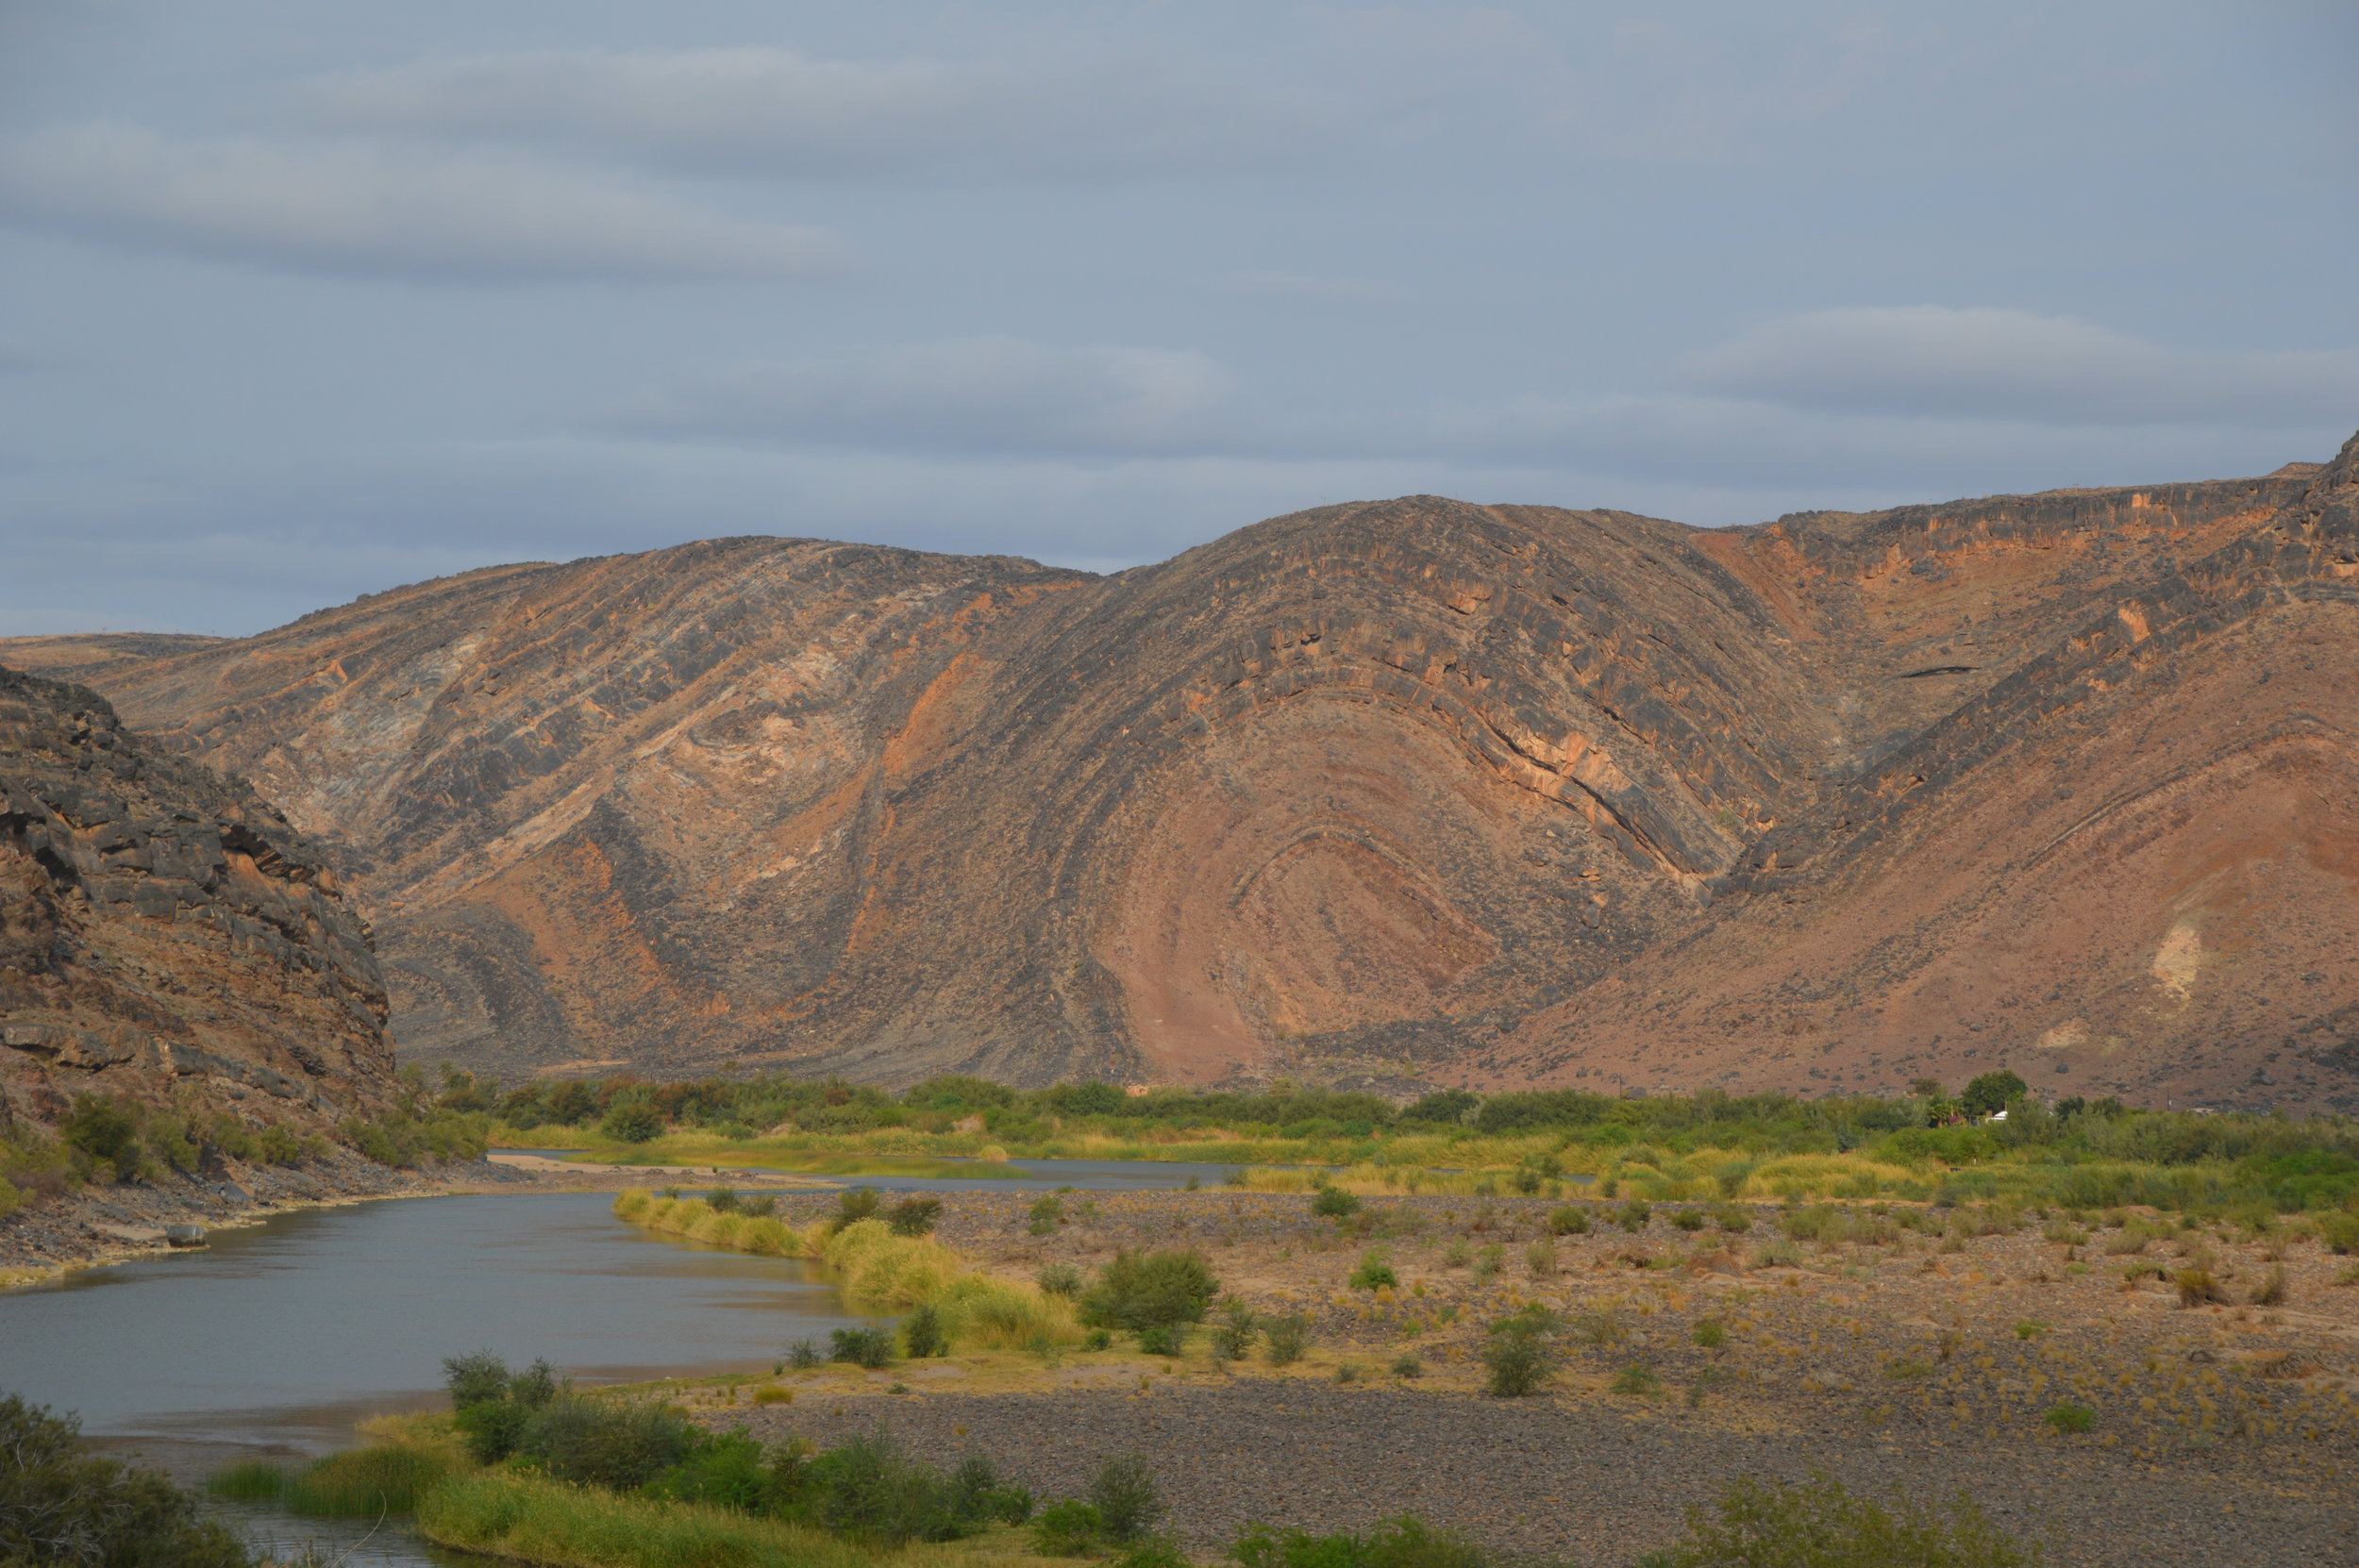  Ediacaran and Cambrian strata along the Orange River 